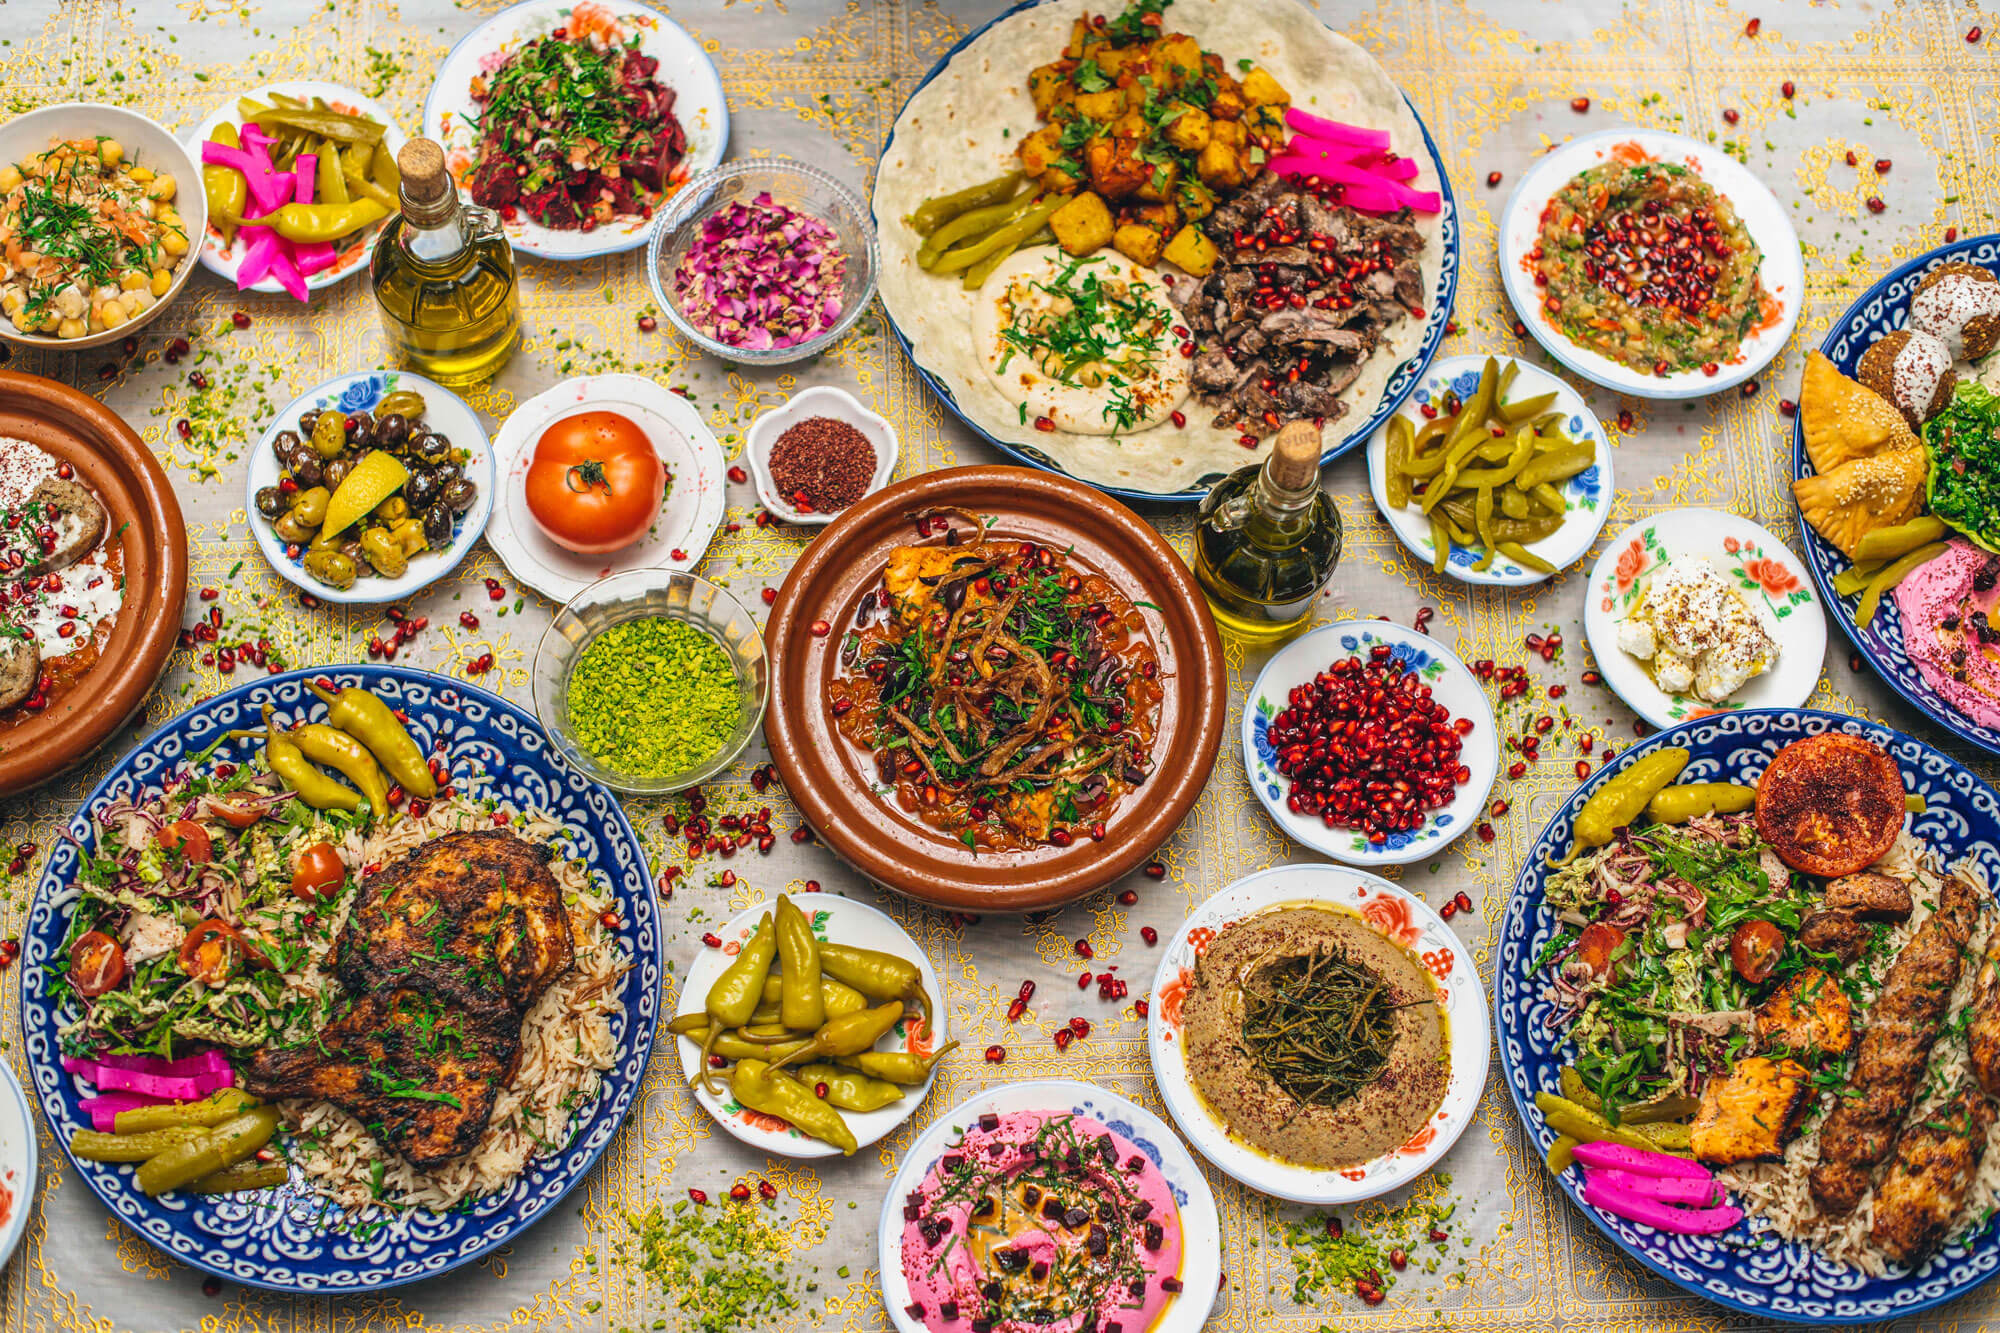 Yalla Yalla - Lebanese kitchen in London